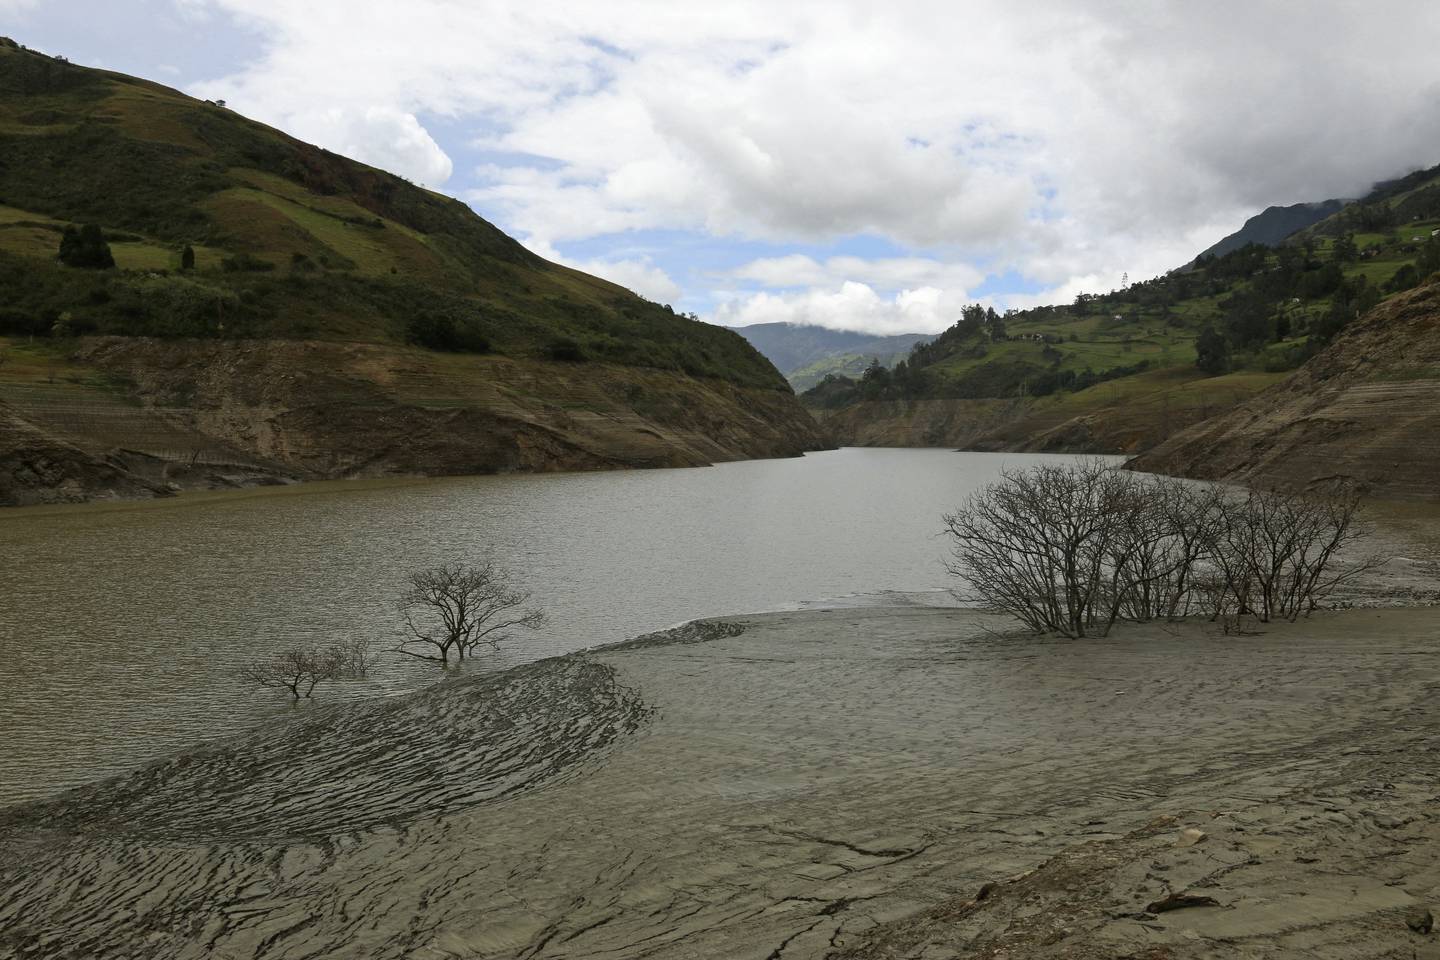 Colombia y Ecuador son dos potencias hídricas con dependencia energética mutua, pero una sequía prolongada agotó sus reservas de agua y los expuso a condiciones sin precedentes. escasez y racionamiento. (Foto de Edwin Tapia/AFP)